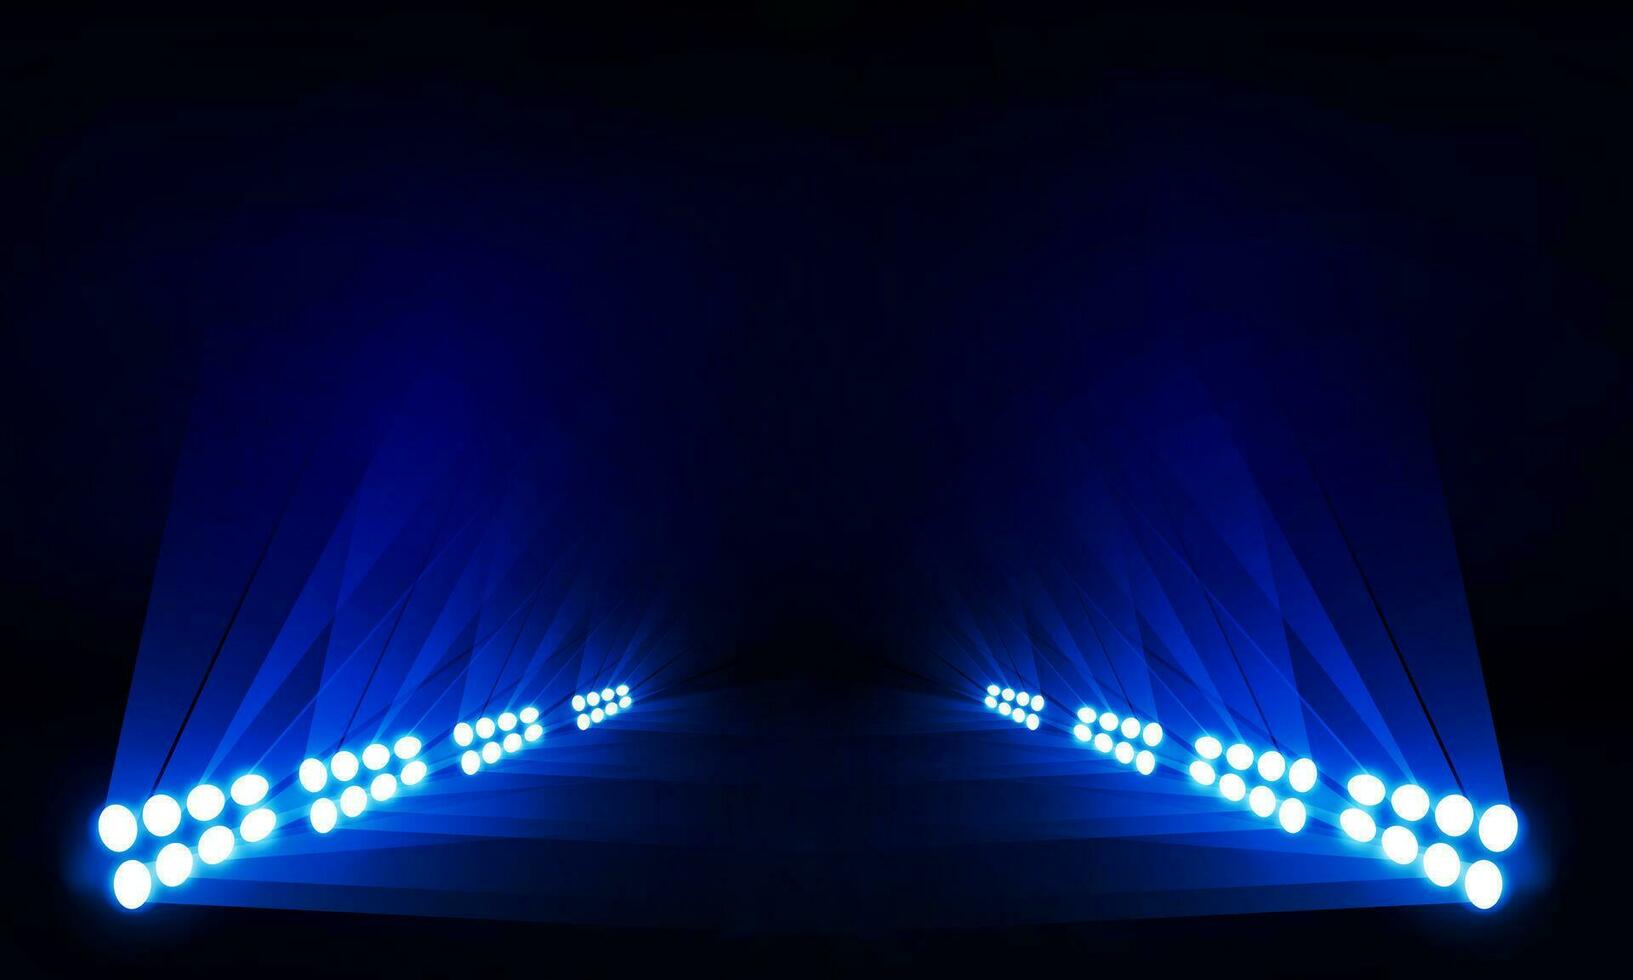 Bright stadium arena lights vector design.